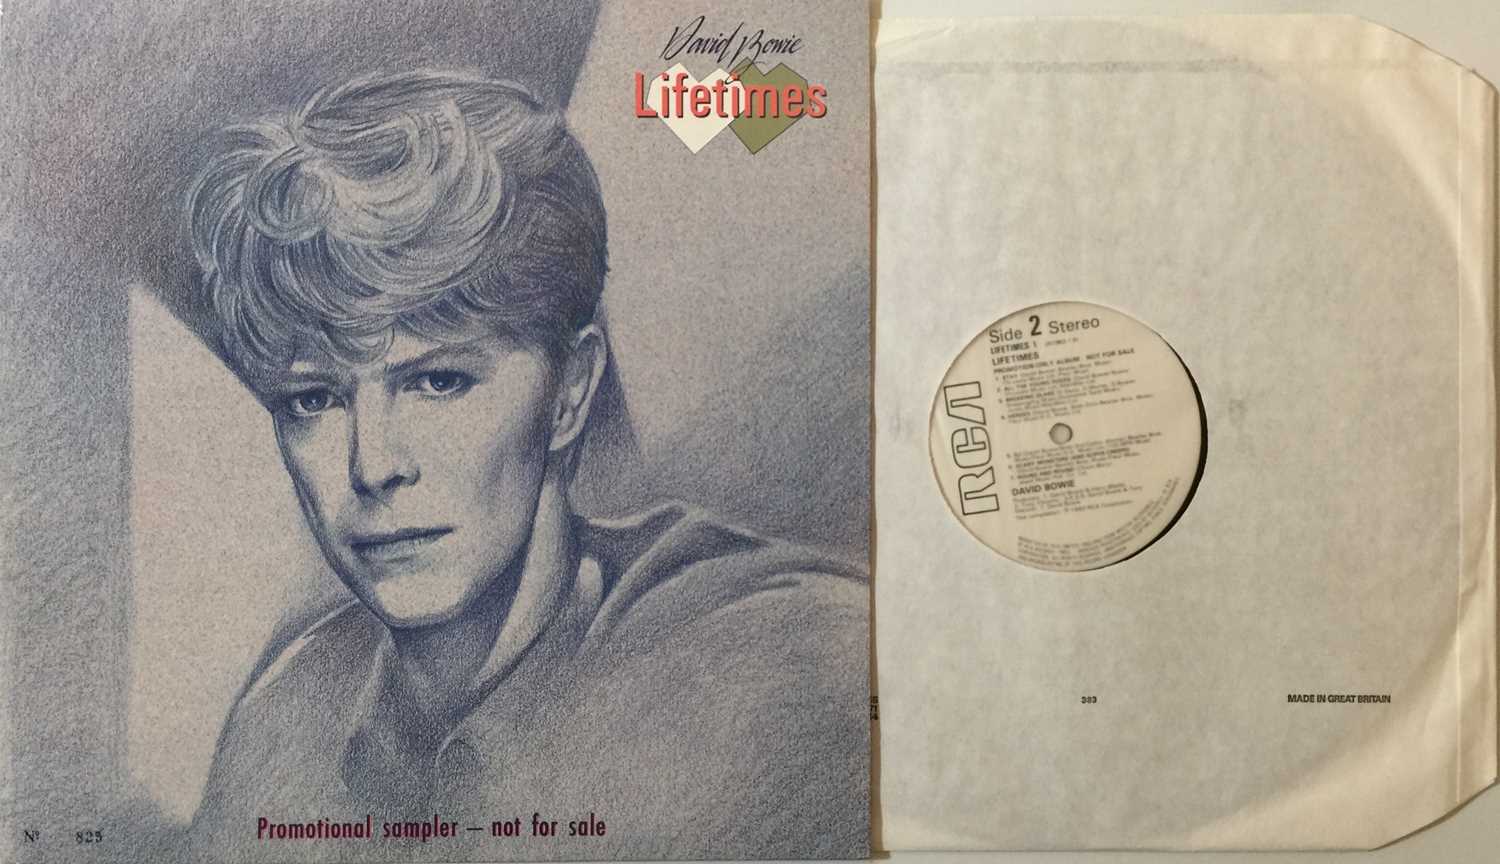 Lot 324 - DAVID BOWIE - LIFETIMES LP (ORIGINAL UK 1983 PROMO COPY - LIFETIMES 1)